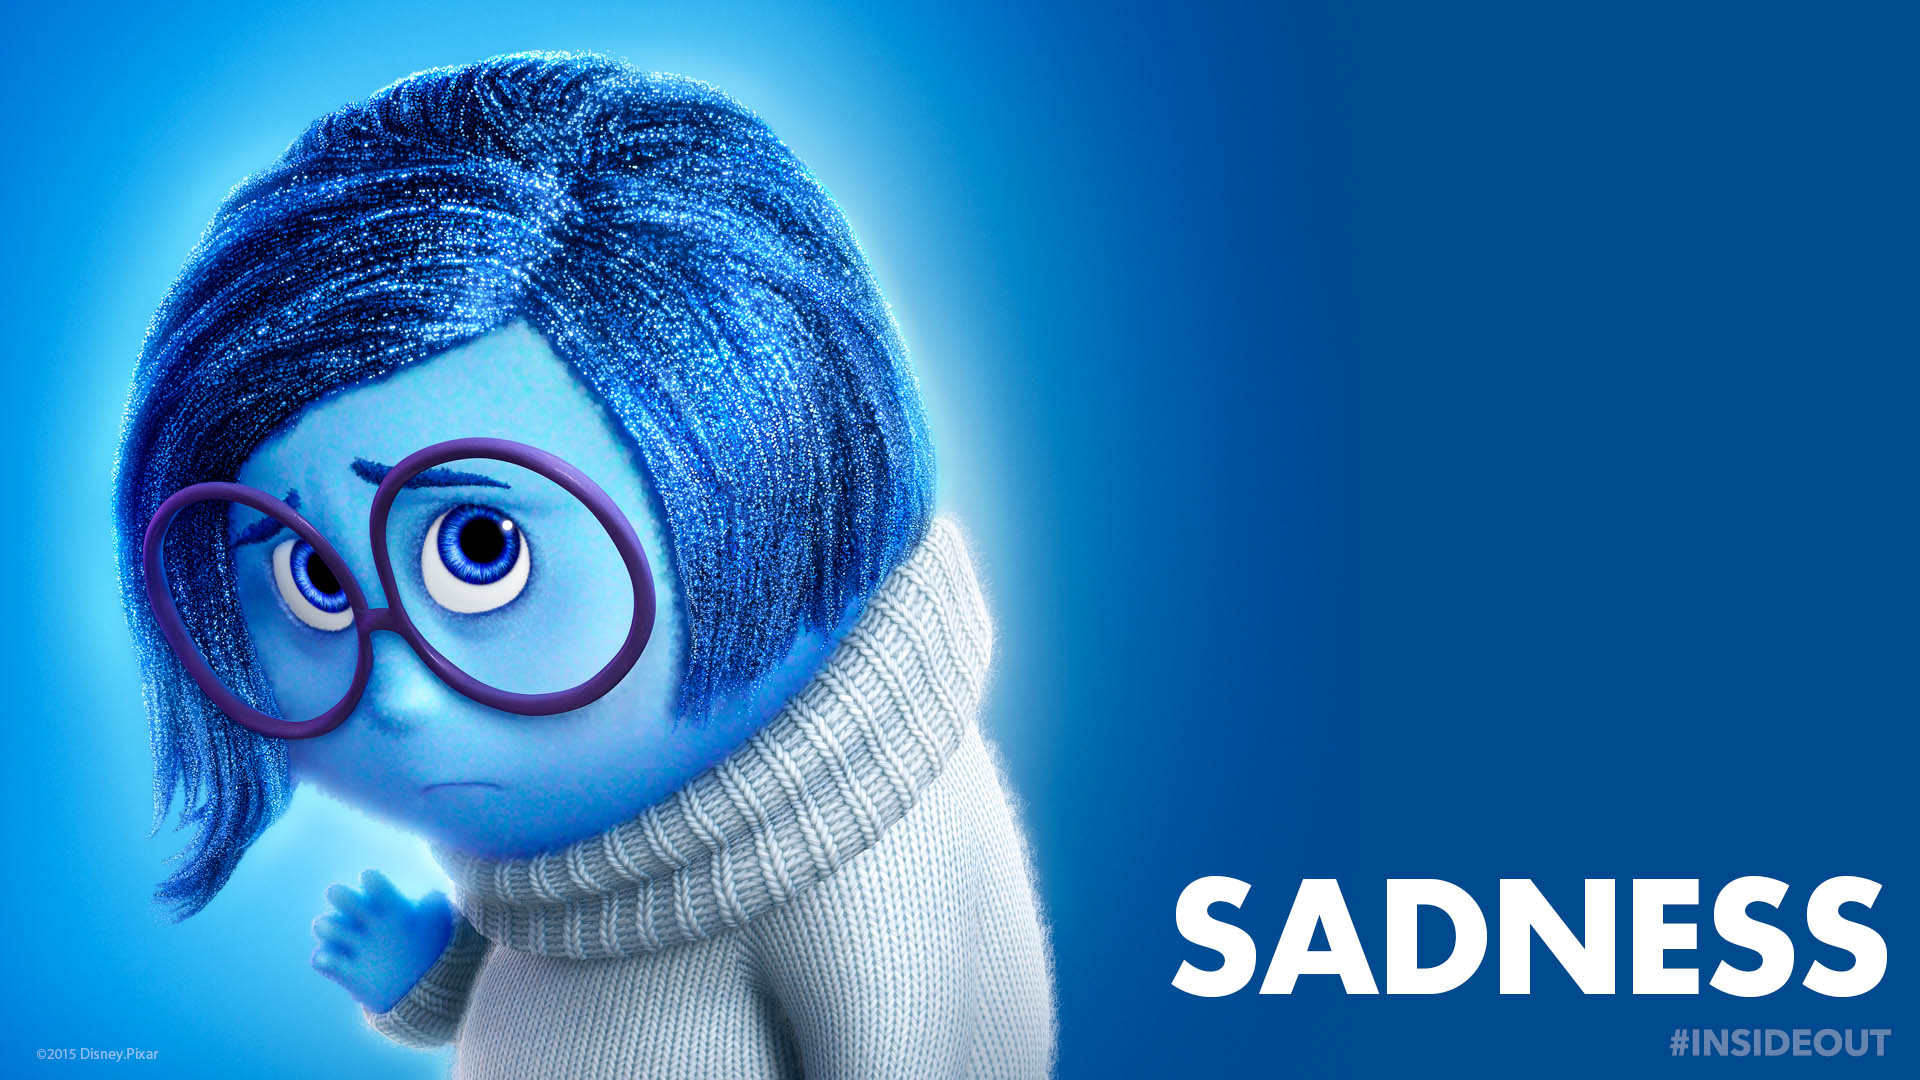 Inside Out character Sadness   Disney Pixar   1920x1080